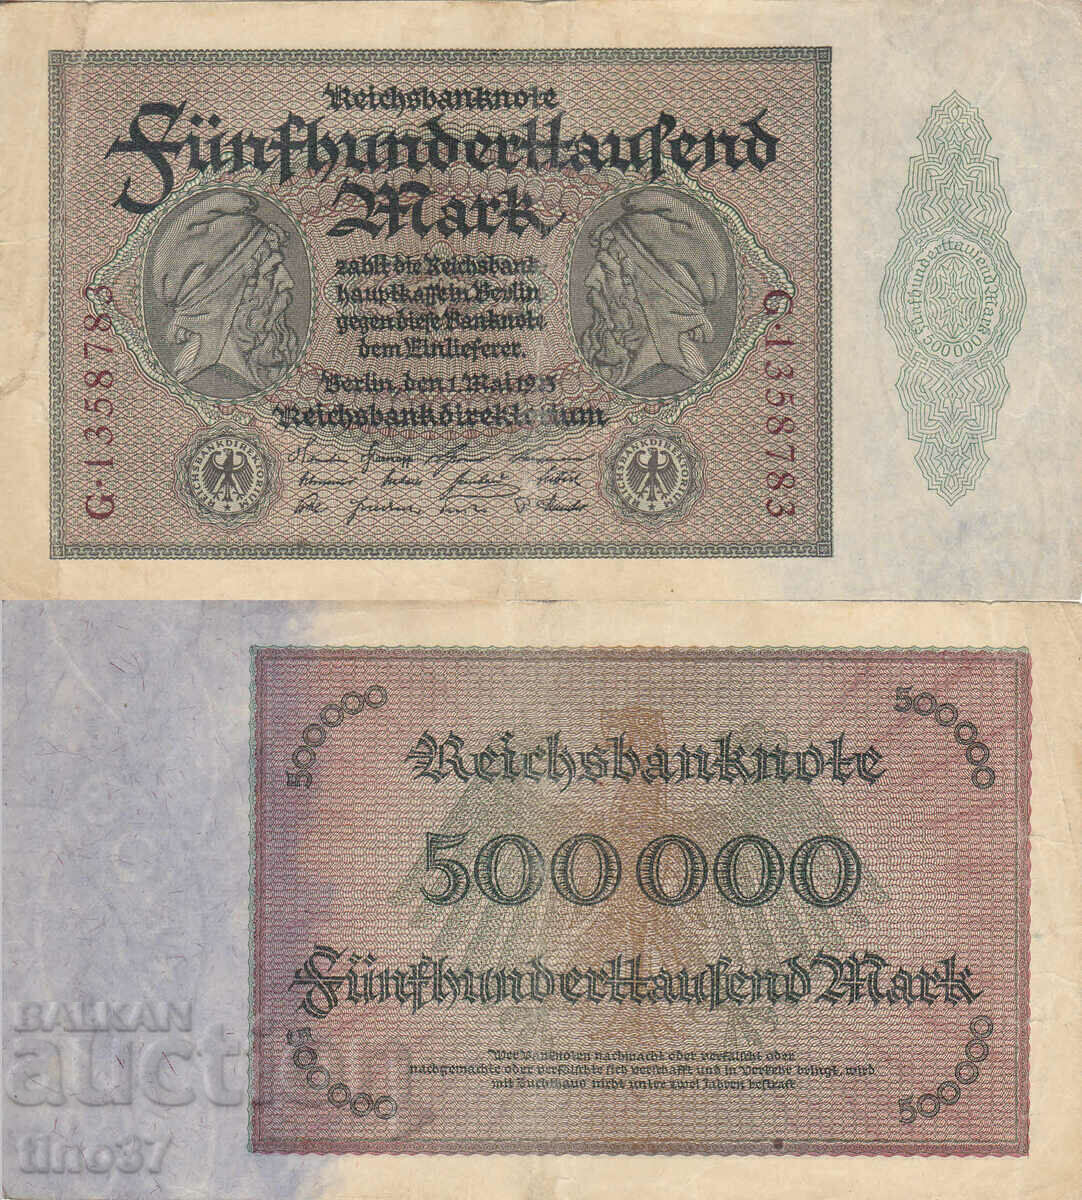 tino37- GERMANY - 500000 MARKS - 1923 - VF